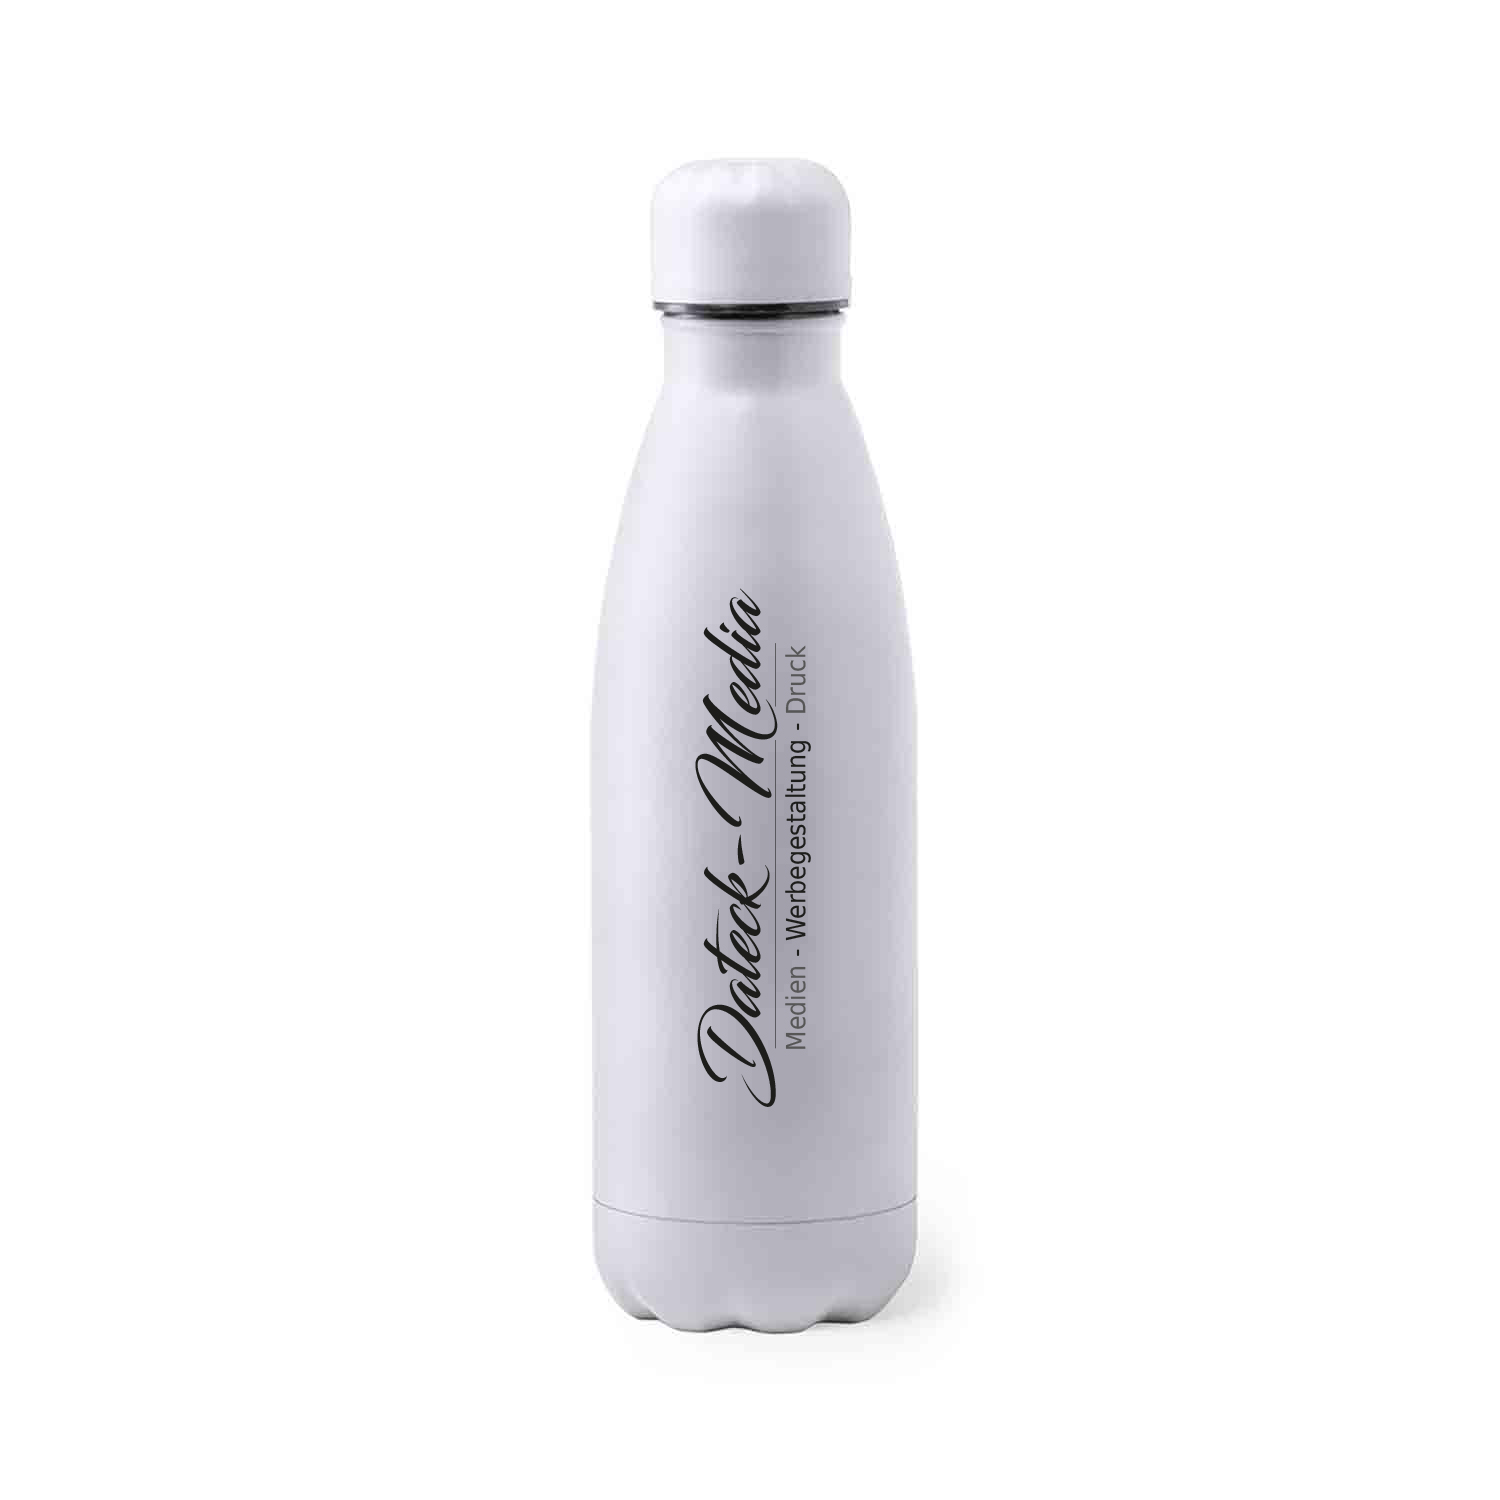 Trinkflasche Edelstahl Thermo mit Ihrem eigenem Logo drauf.